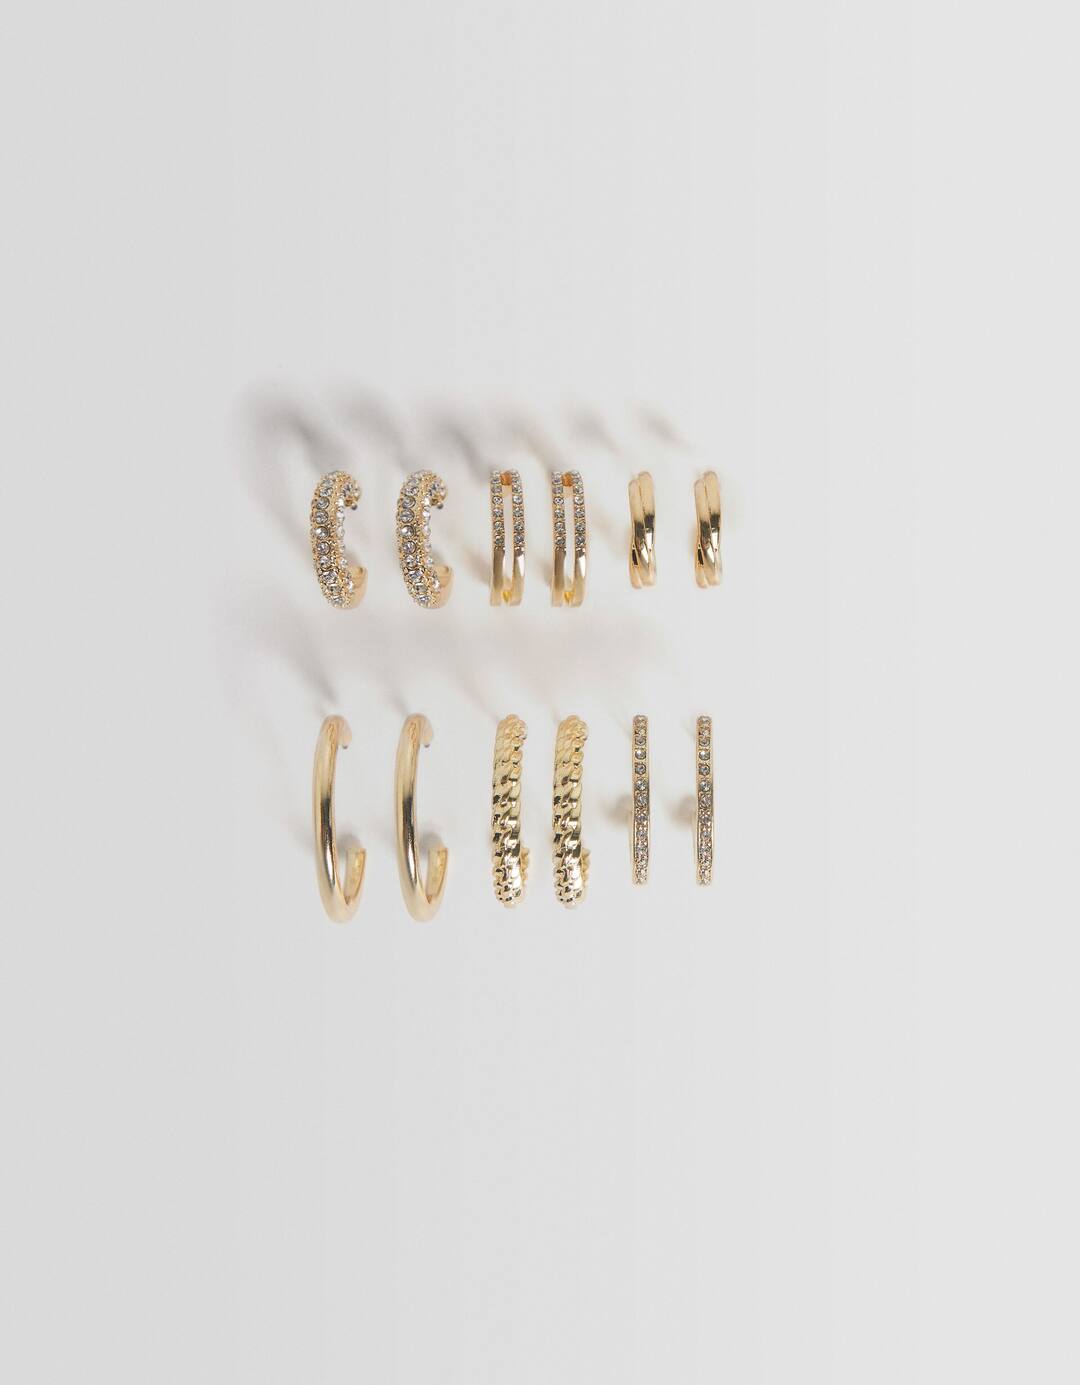 Set of 6 pairs of rhinestone texture earrings